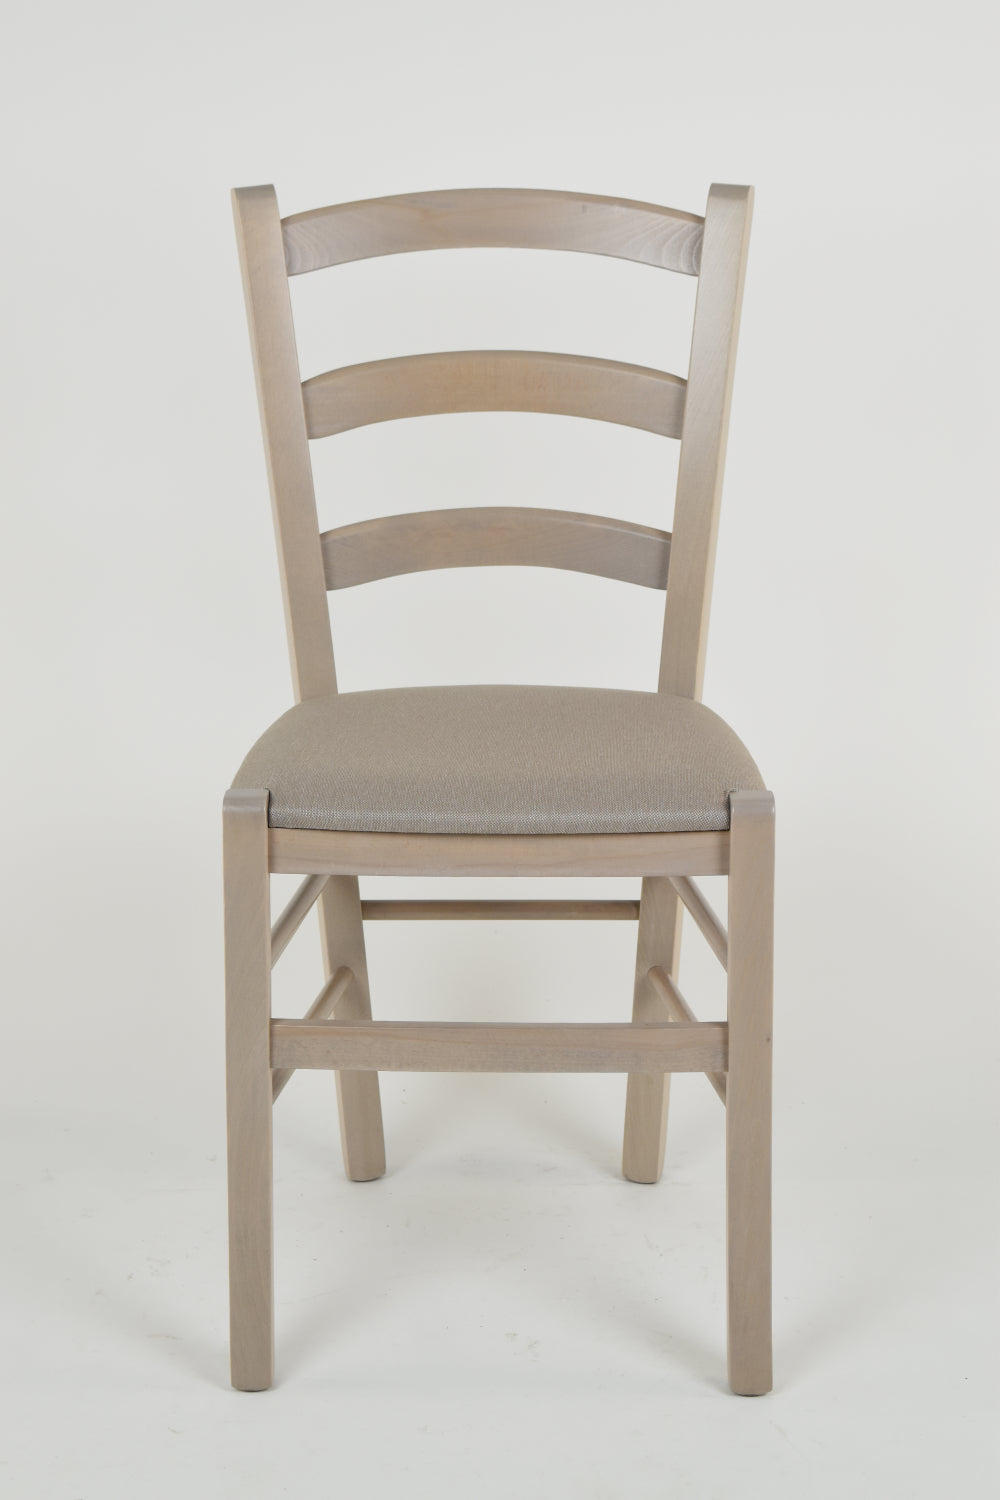 Tommychairs - Set 2 sillas de Cocina y Comedor Venice, Estructura en Madera de Haya anilina Gris Claro y Asiento tapizado en Tejido color Gamuza